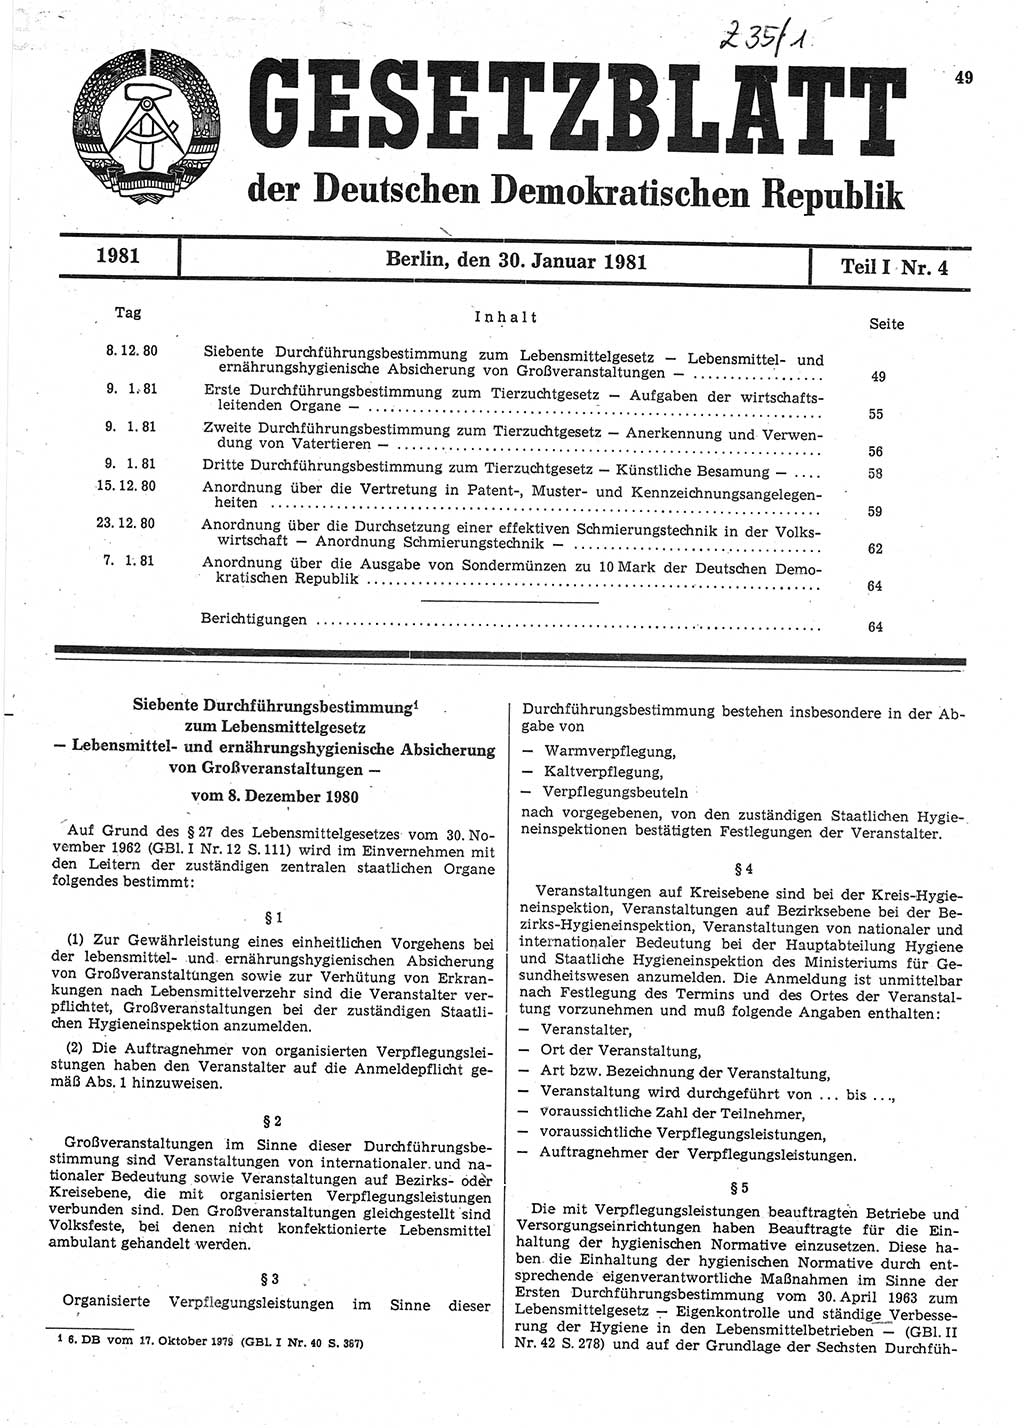 Gesetzblatt (GBl.) der Deutschen Demokratischen Republik (DDR) Teil Ⅰ 1981, Seite 49 (GBl. DDR Ⅰ 1981, S. 49)